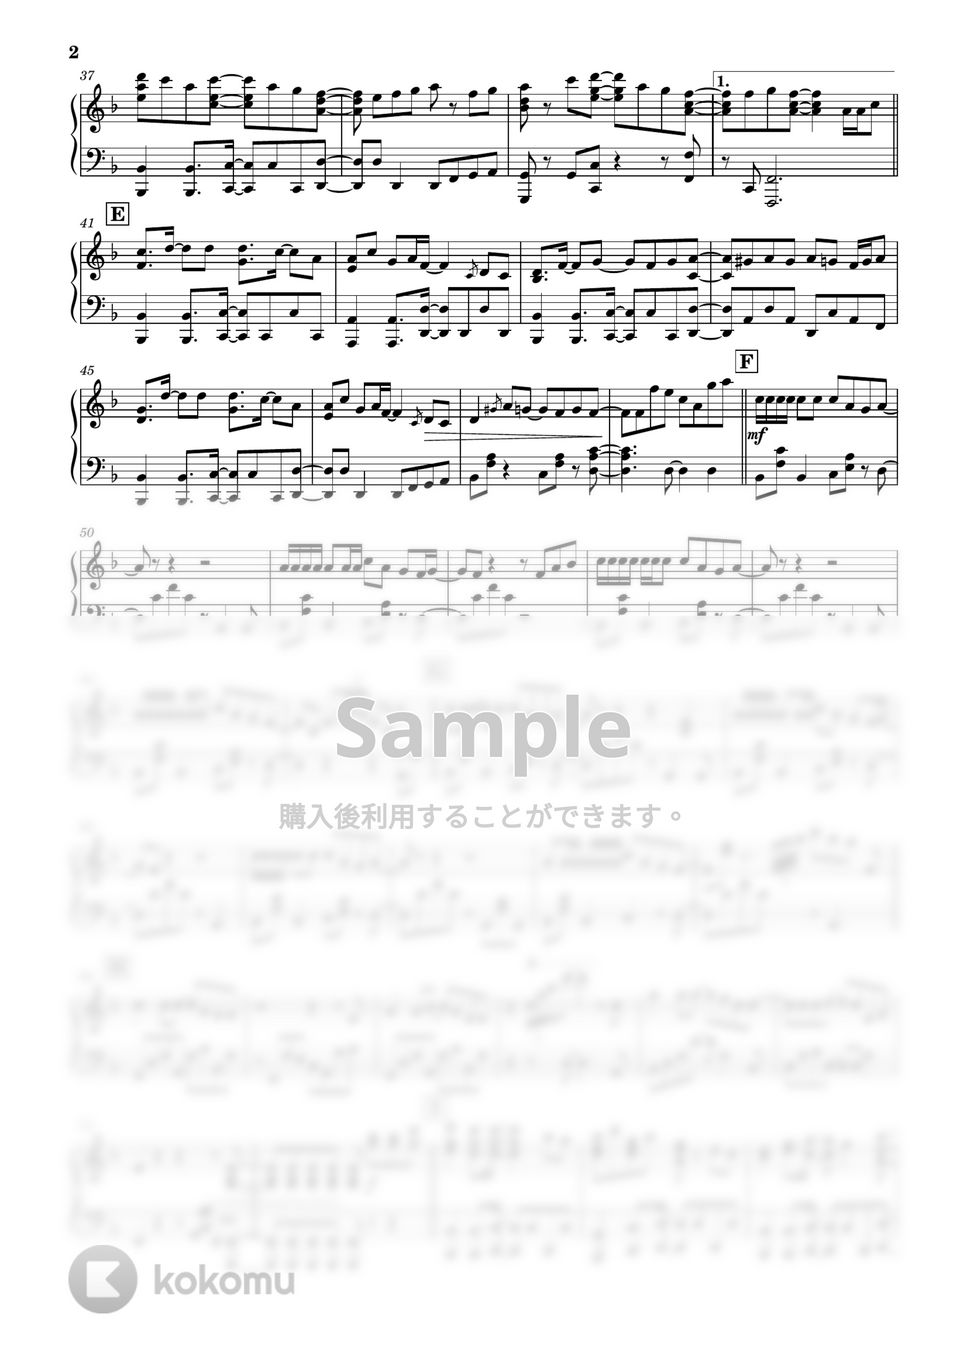 ヨルシカ - 春泥棒 (ピアノ) by PiaFlu